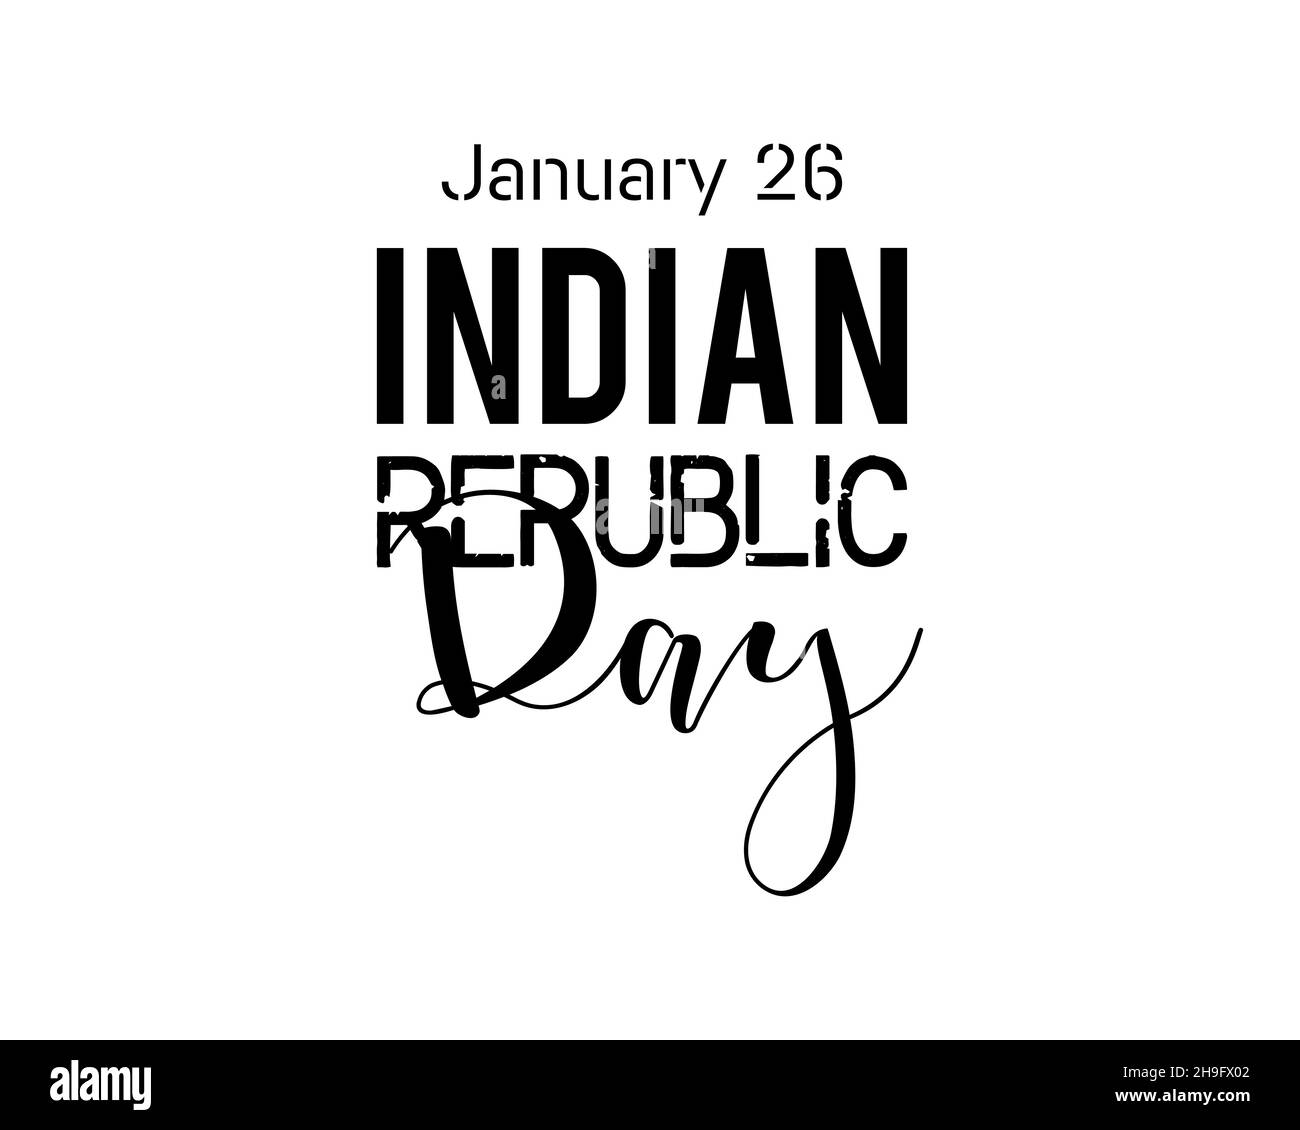 Januar 26 - Handschriftendesign zum Indian Republic Day. Kreative Kalligraphie Vektor-Illustration für Banner, Poster, T-Shirt, Karte. Stock Vektor